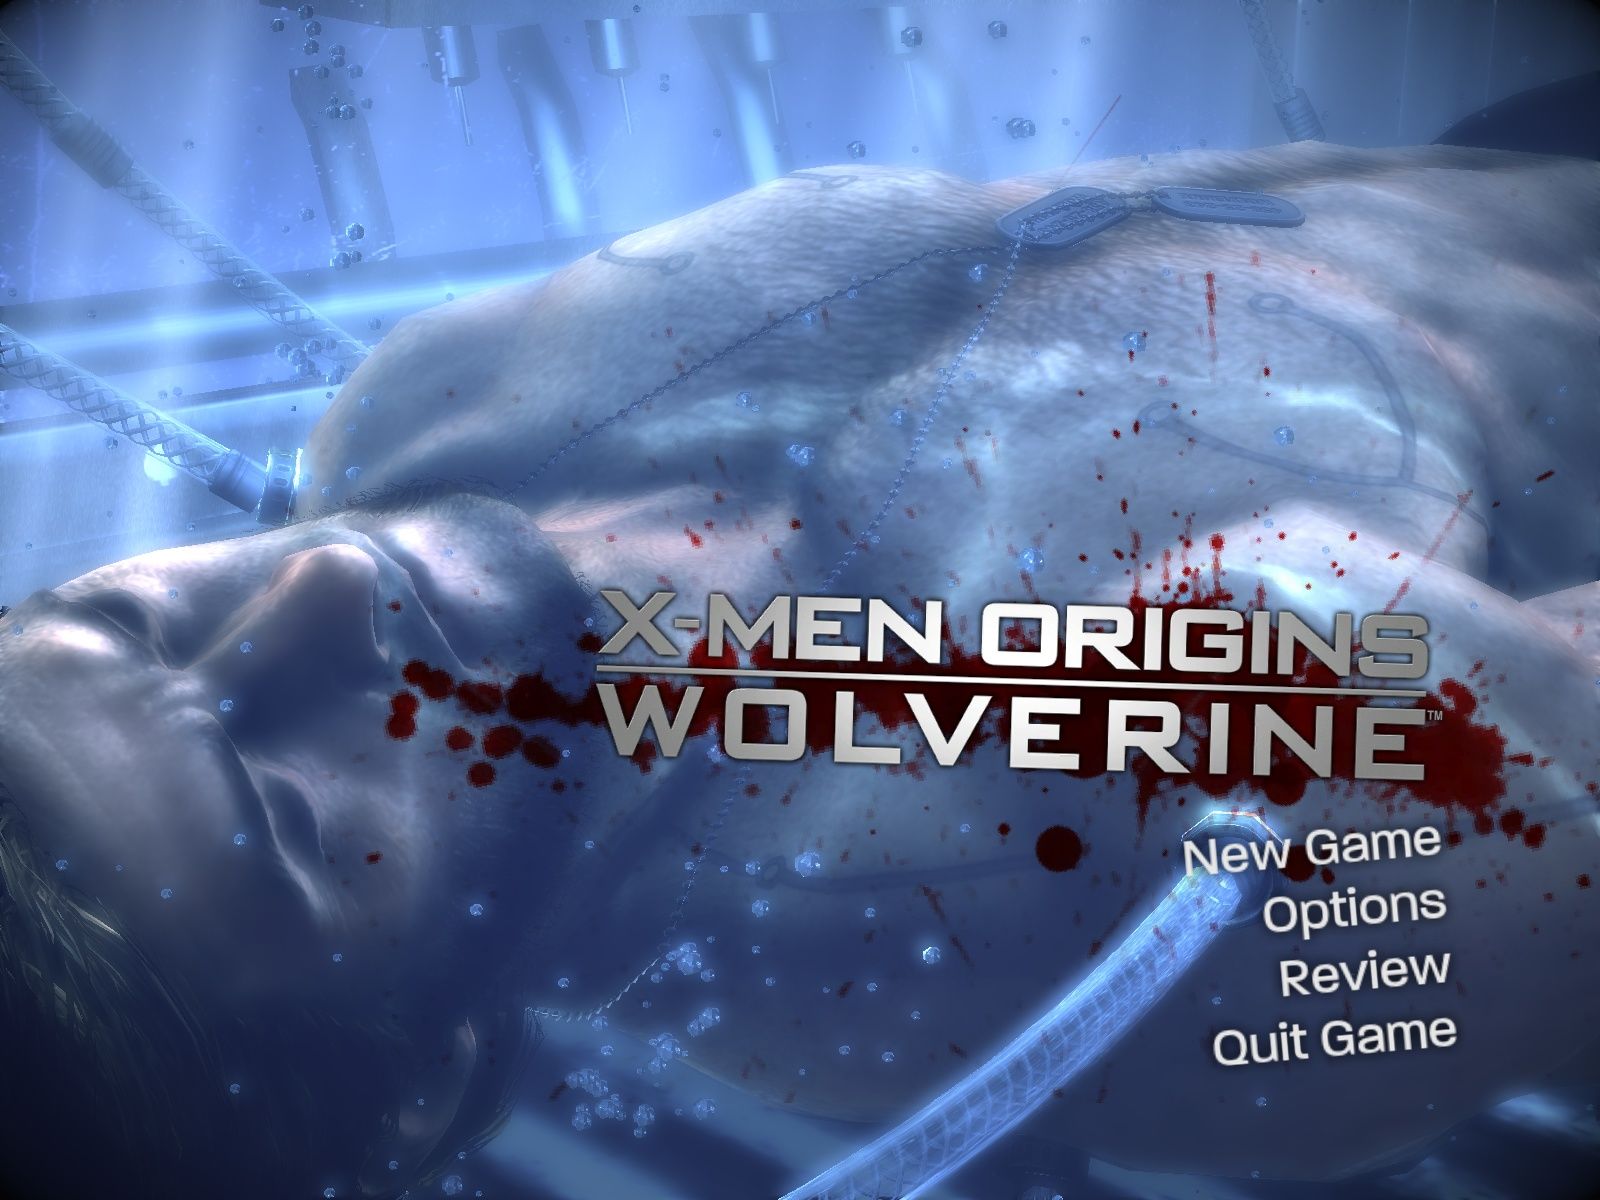 xmen origins wolverine